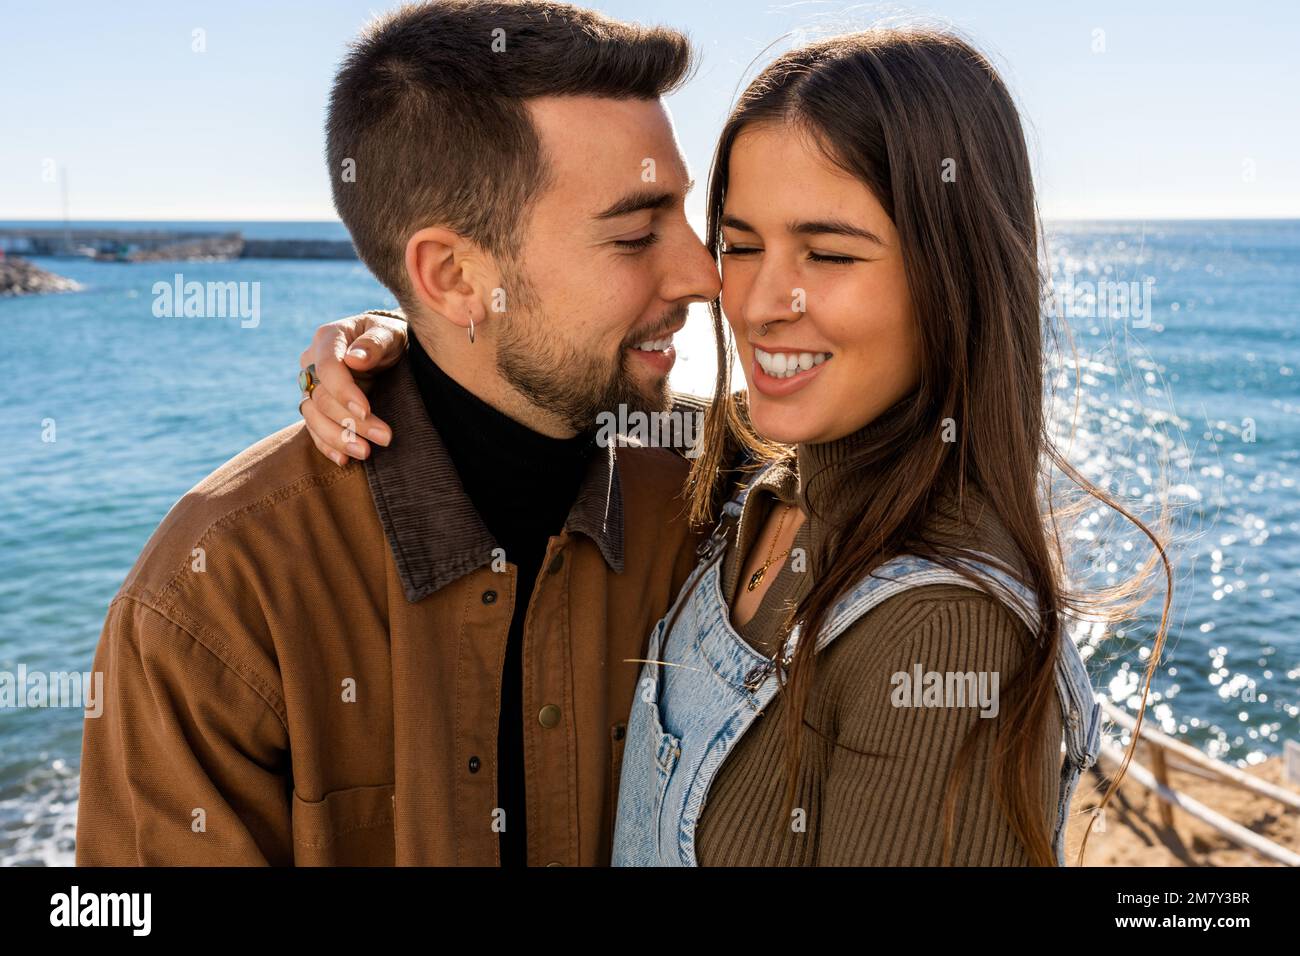 les jeunes amoureux embrassent la saint-valentin devant un paysage marin pendant une journée ensoleillée Banque D'Images